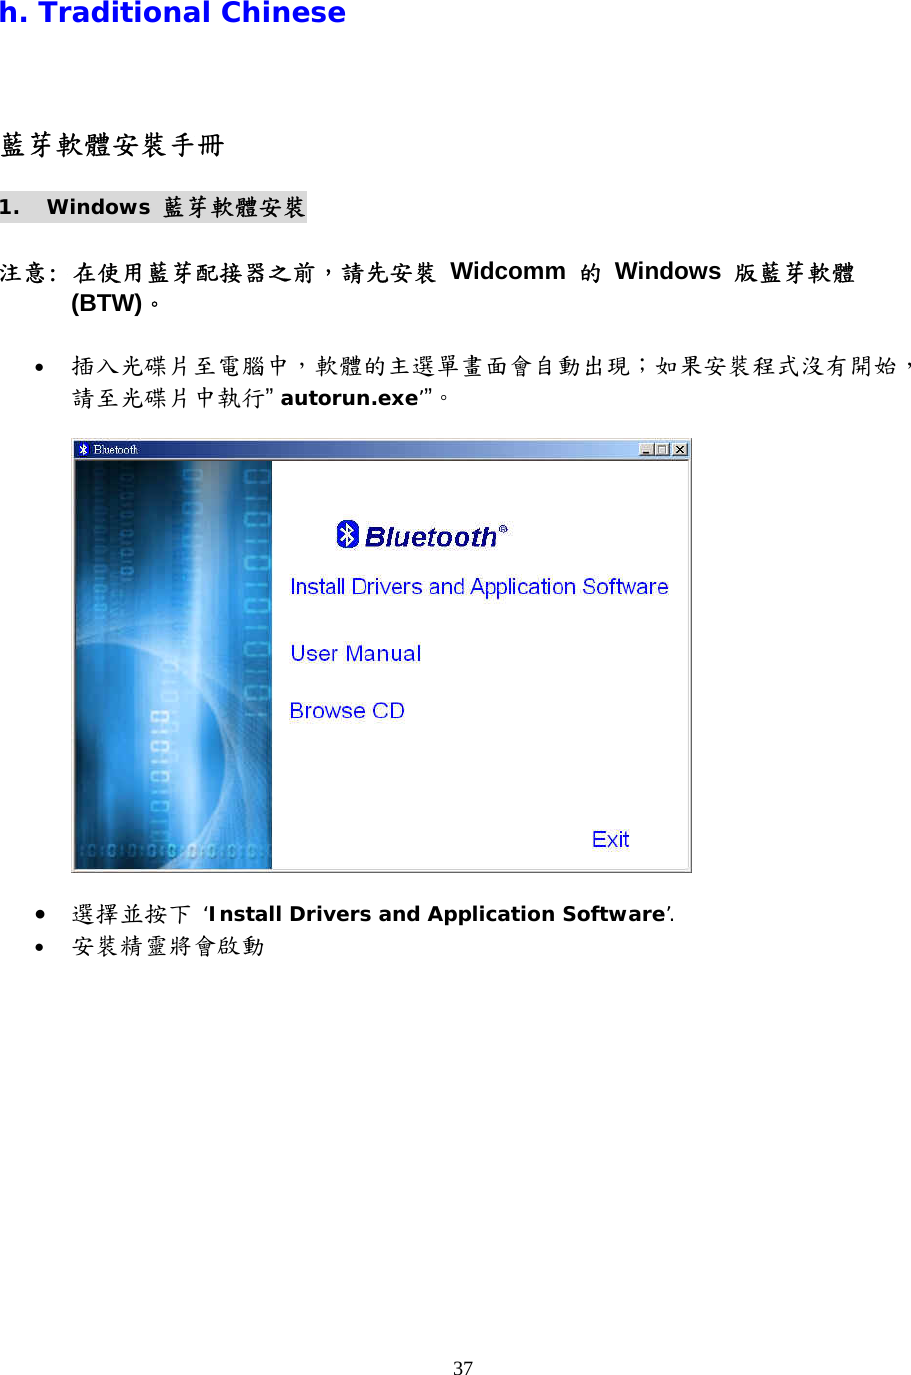 37 h. Traditional Chinese 藍芽軟體安裝手冊 1. Windows 藍芽軟體安裝  注意: 在使用藍芽配接器之前，請先安裝 Widcomm 的 Windows 版藍芽軟體 (BTW)。  •  插入光碟片至電腦中，軟體的主選單畫面會自動出現；如果安裝程式沒有開始，請至光碟片中執行” autorun.exe’”。     •  選擇並按下 ‘Install Drivers and Application Software’. •  安裝精靈將會啟動 